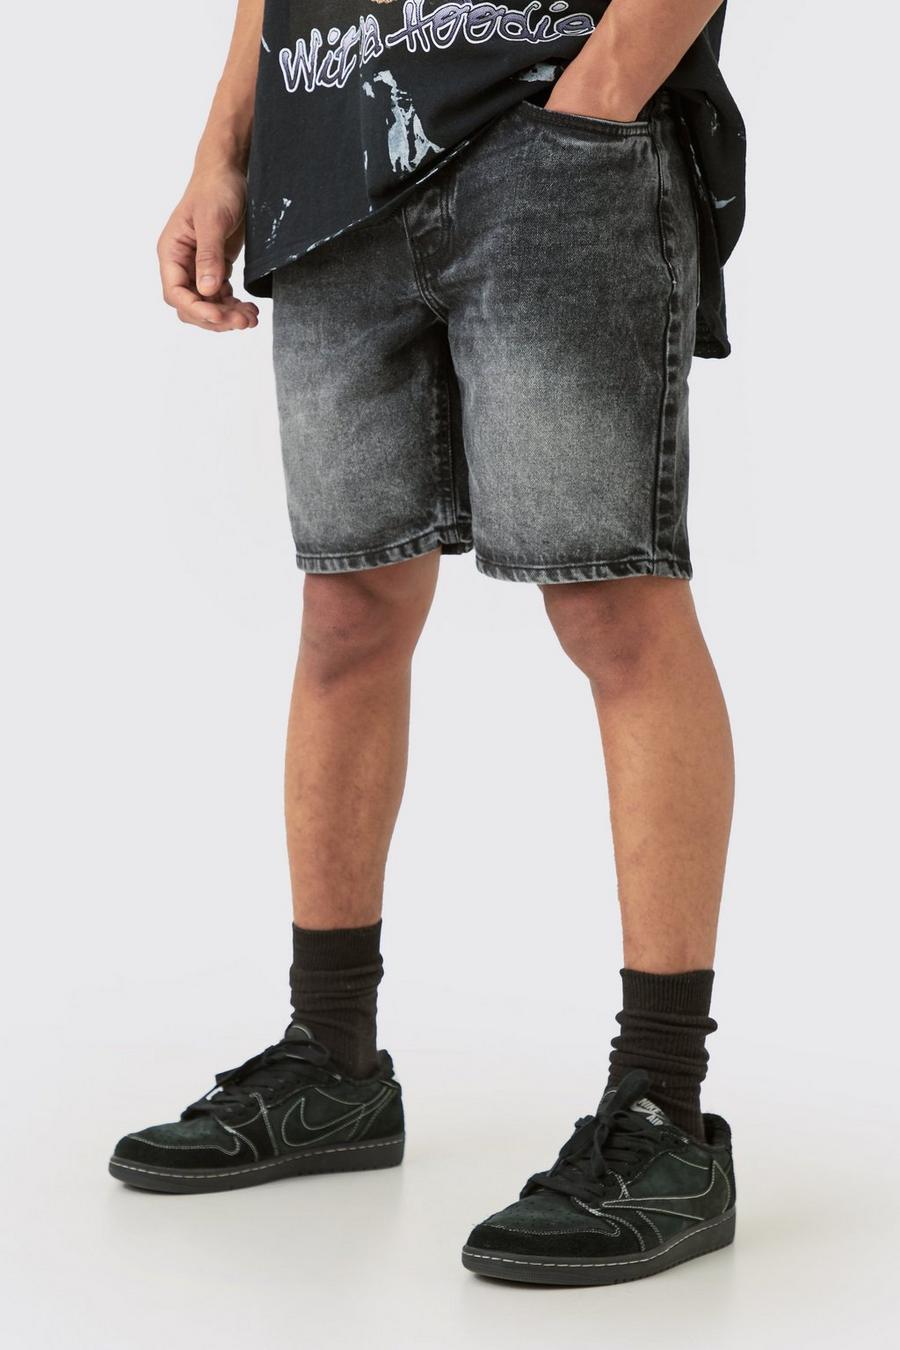 Pantalones cortos vaqueros ajustados sin tratar con cintura elástica en color carbón, Charcoal image number 1